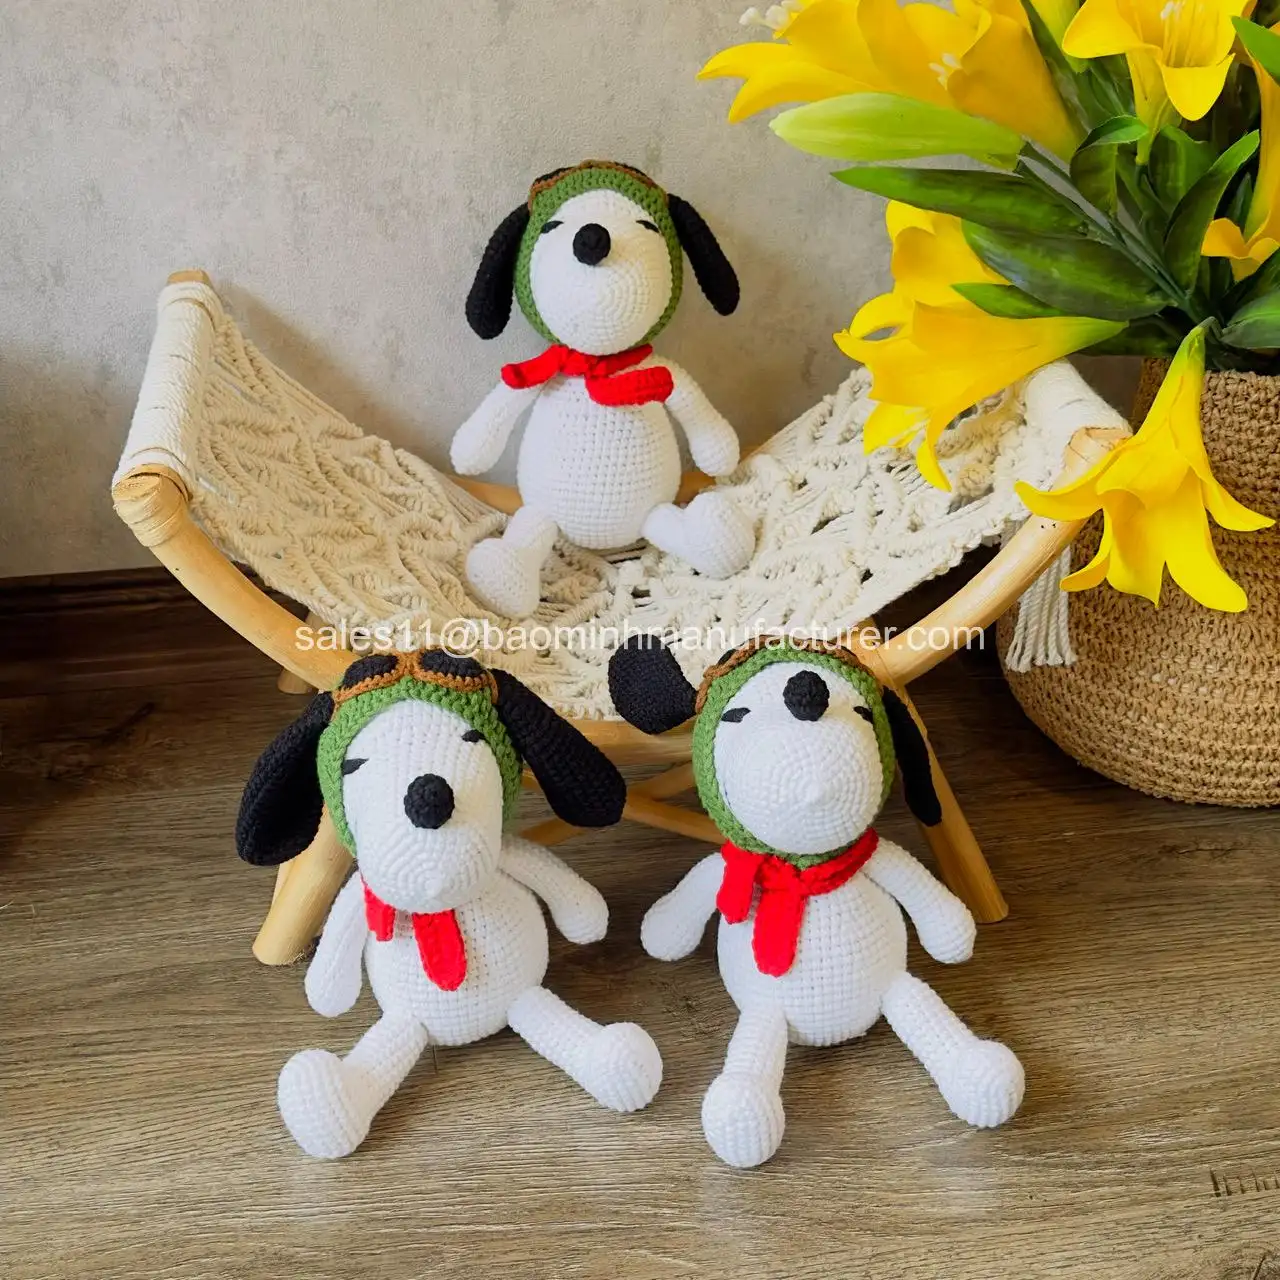 مجموعة الكلاب والجرو المصنوعة يدويا من لعب اميجورومي المحشوة الدمية الكروشيه